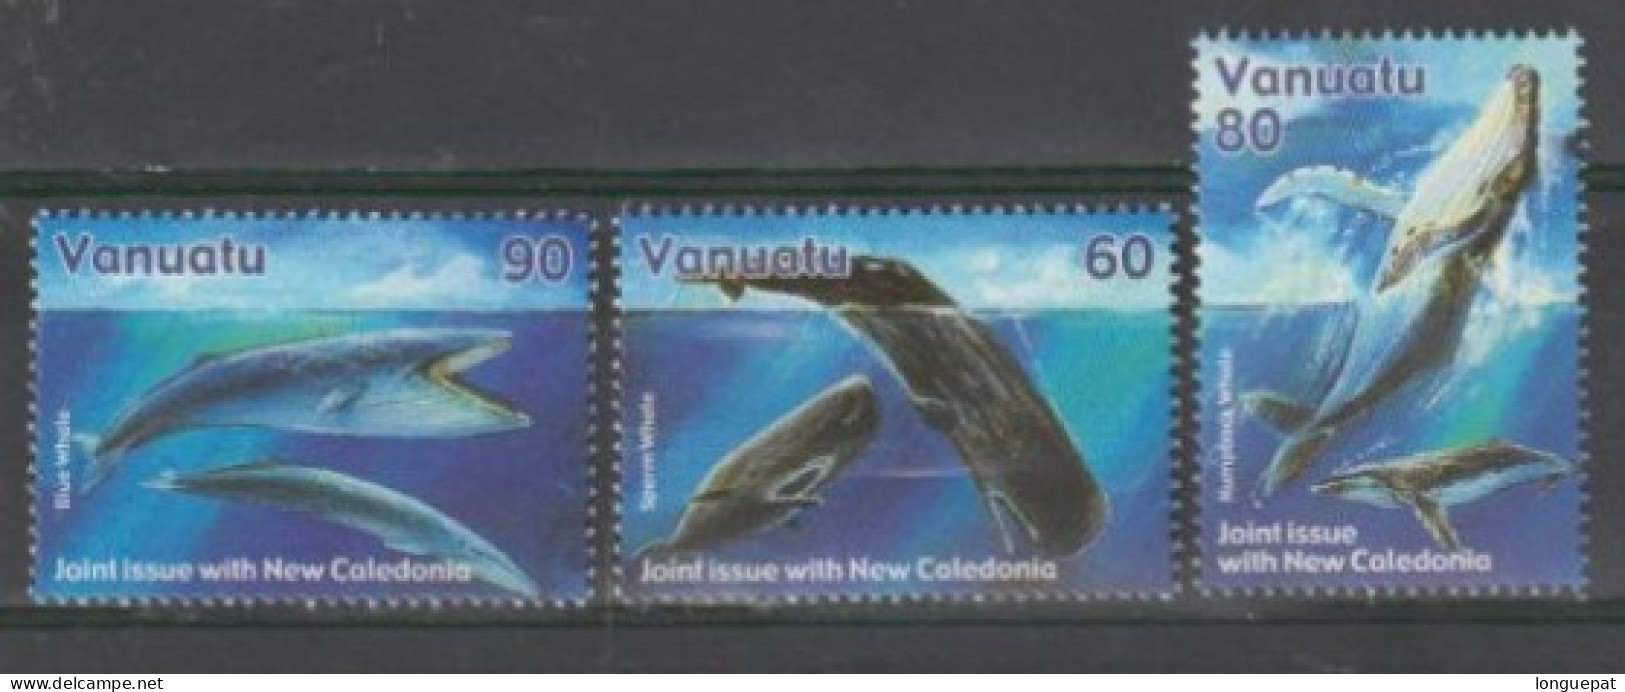 VANUATU - Faune Marine - Baleines : Cachalot, Baleine à Bosse, Baleine Bleue - Cétacés - Mammifères - - Ballenas